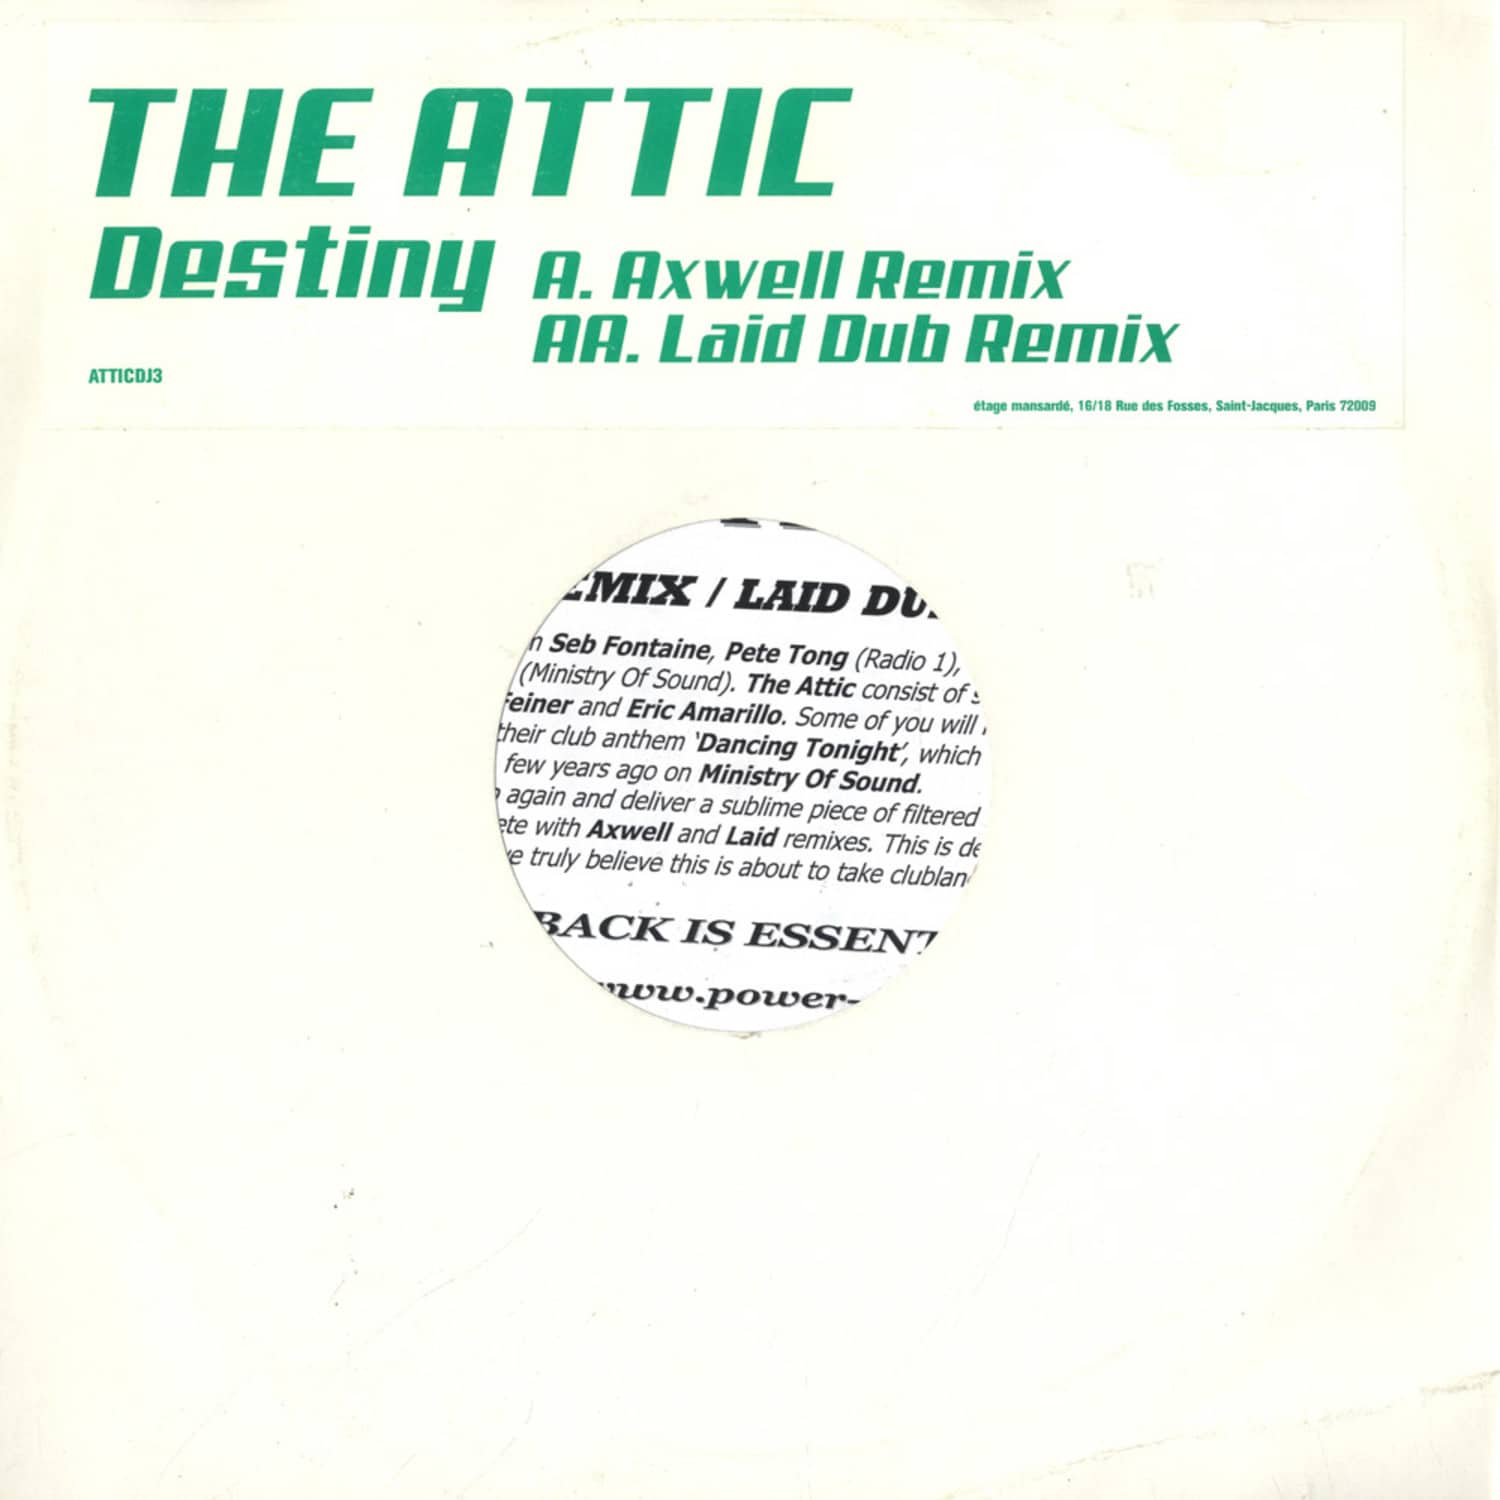 The Attic - DESTINY